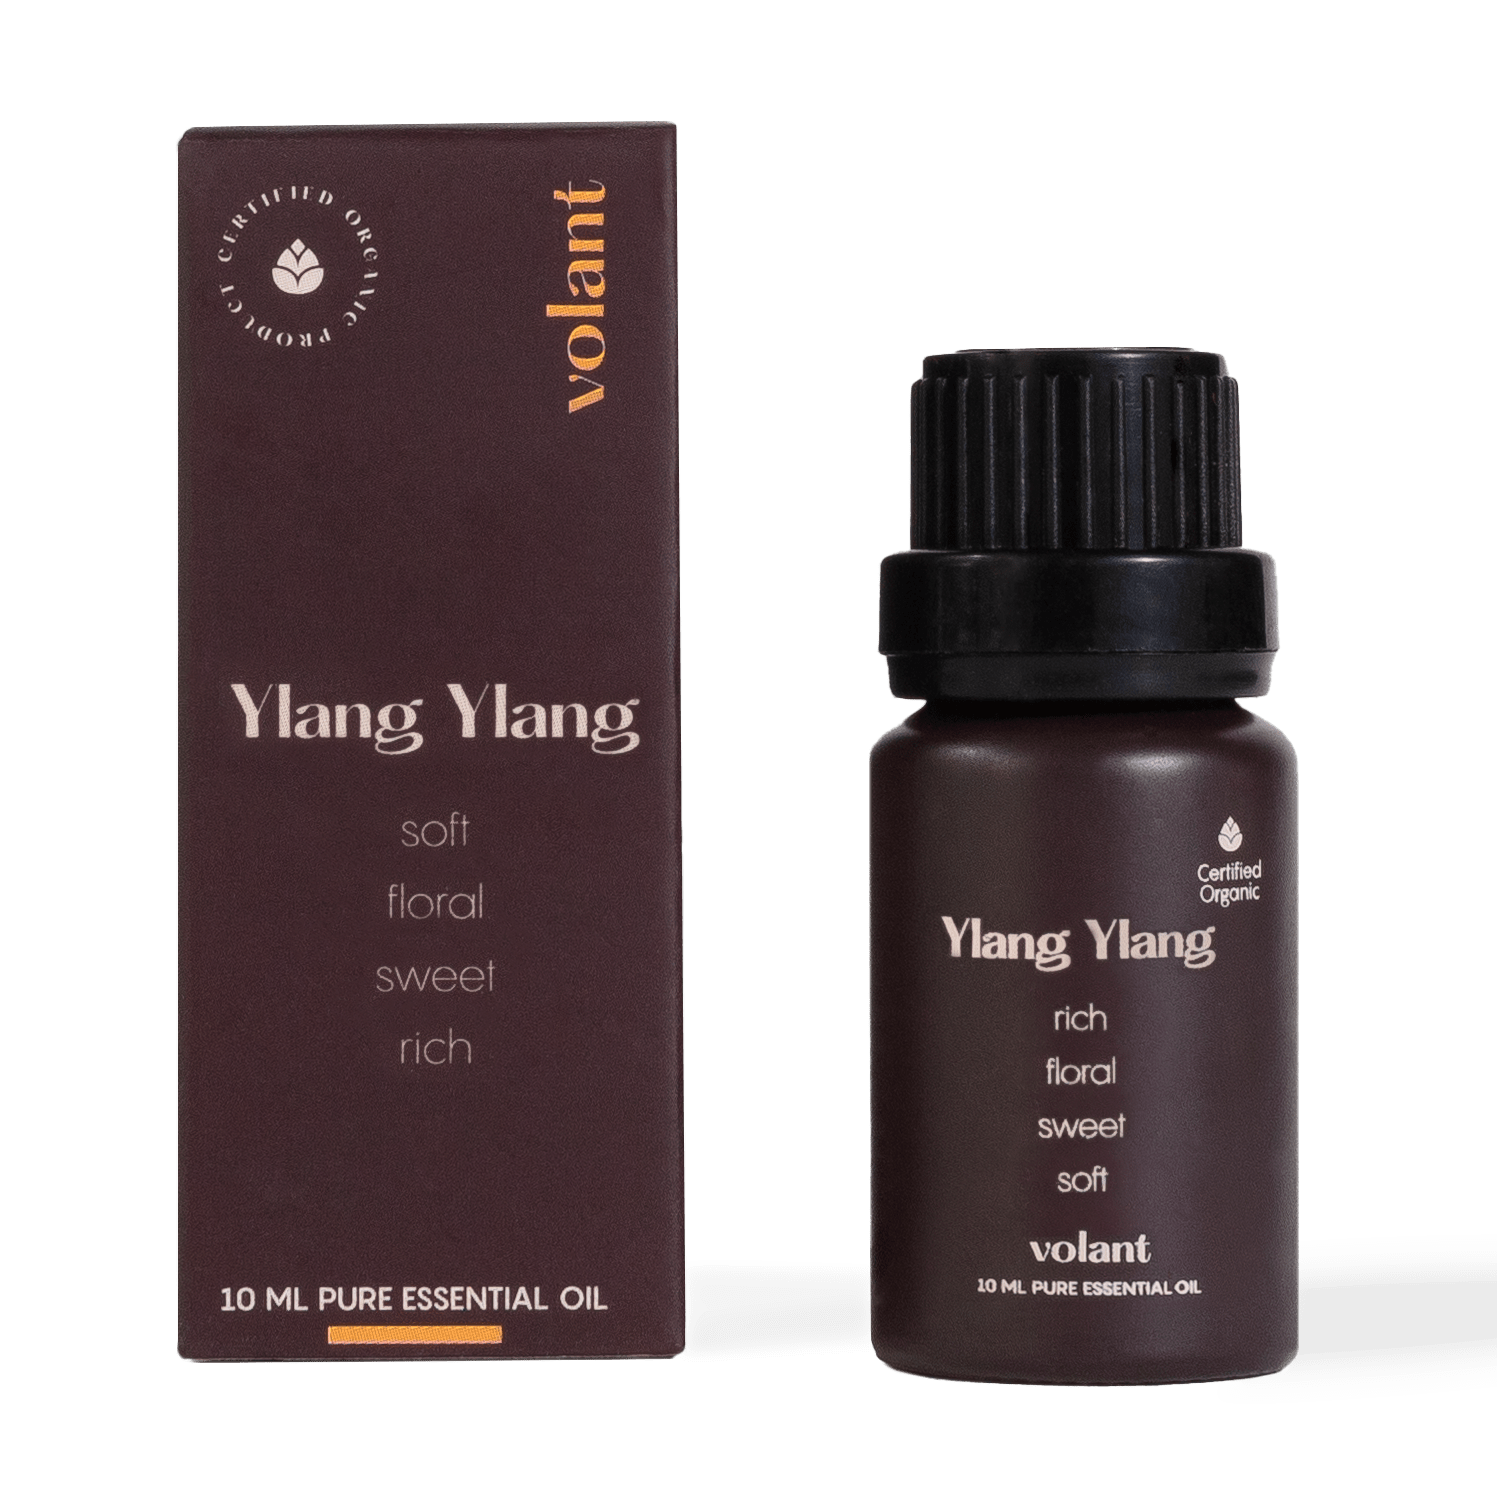 Volant ekologisk ylang ylang eterisk olja flaskförpackning för hår och hud